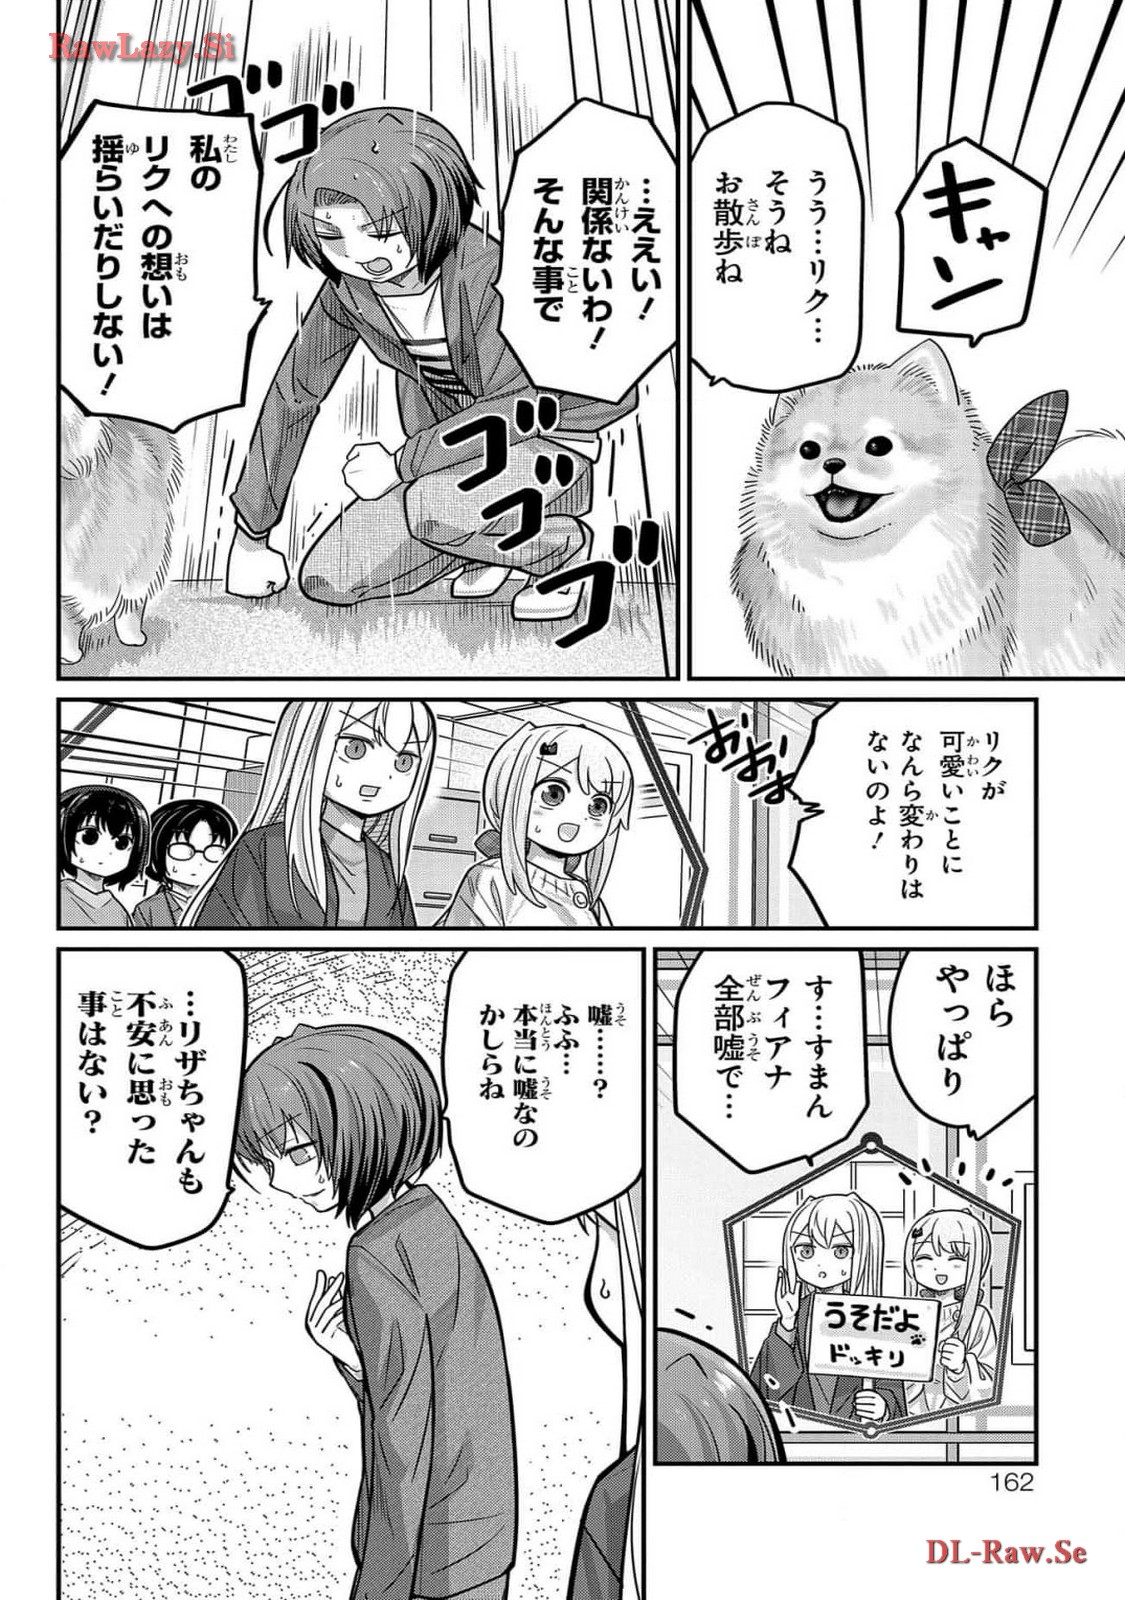 Kawaisugi Crisis - Chapter 106 - Page 10